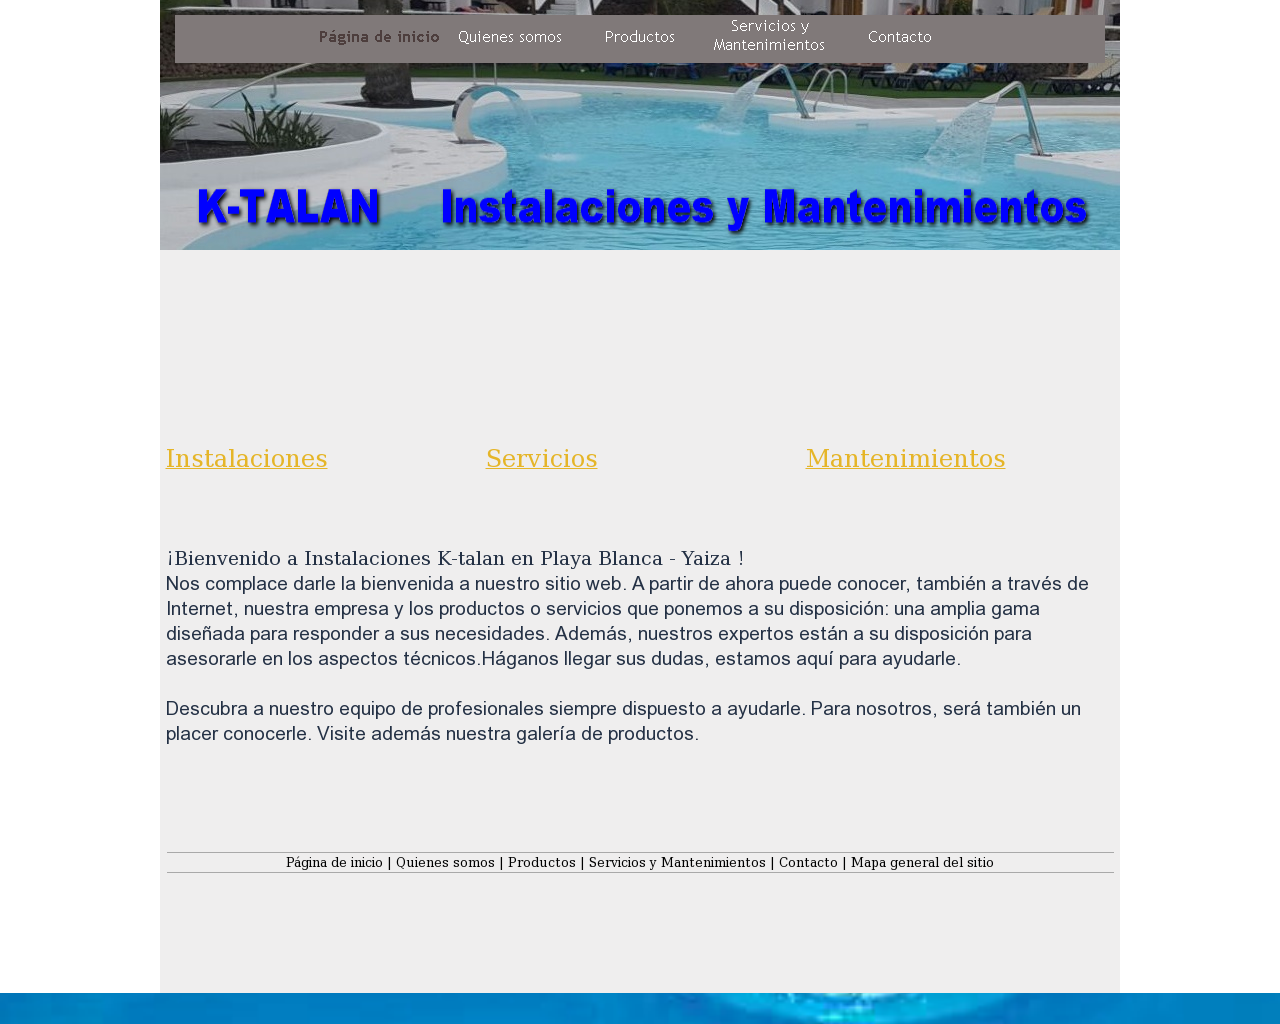 El sitio de la imagen k-talan.es en 1280x1024